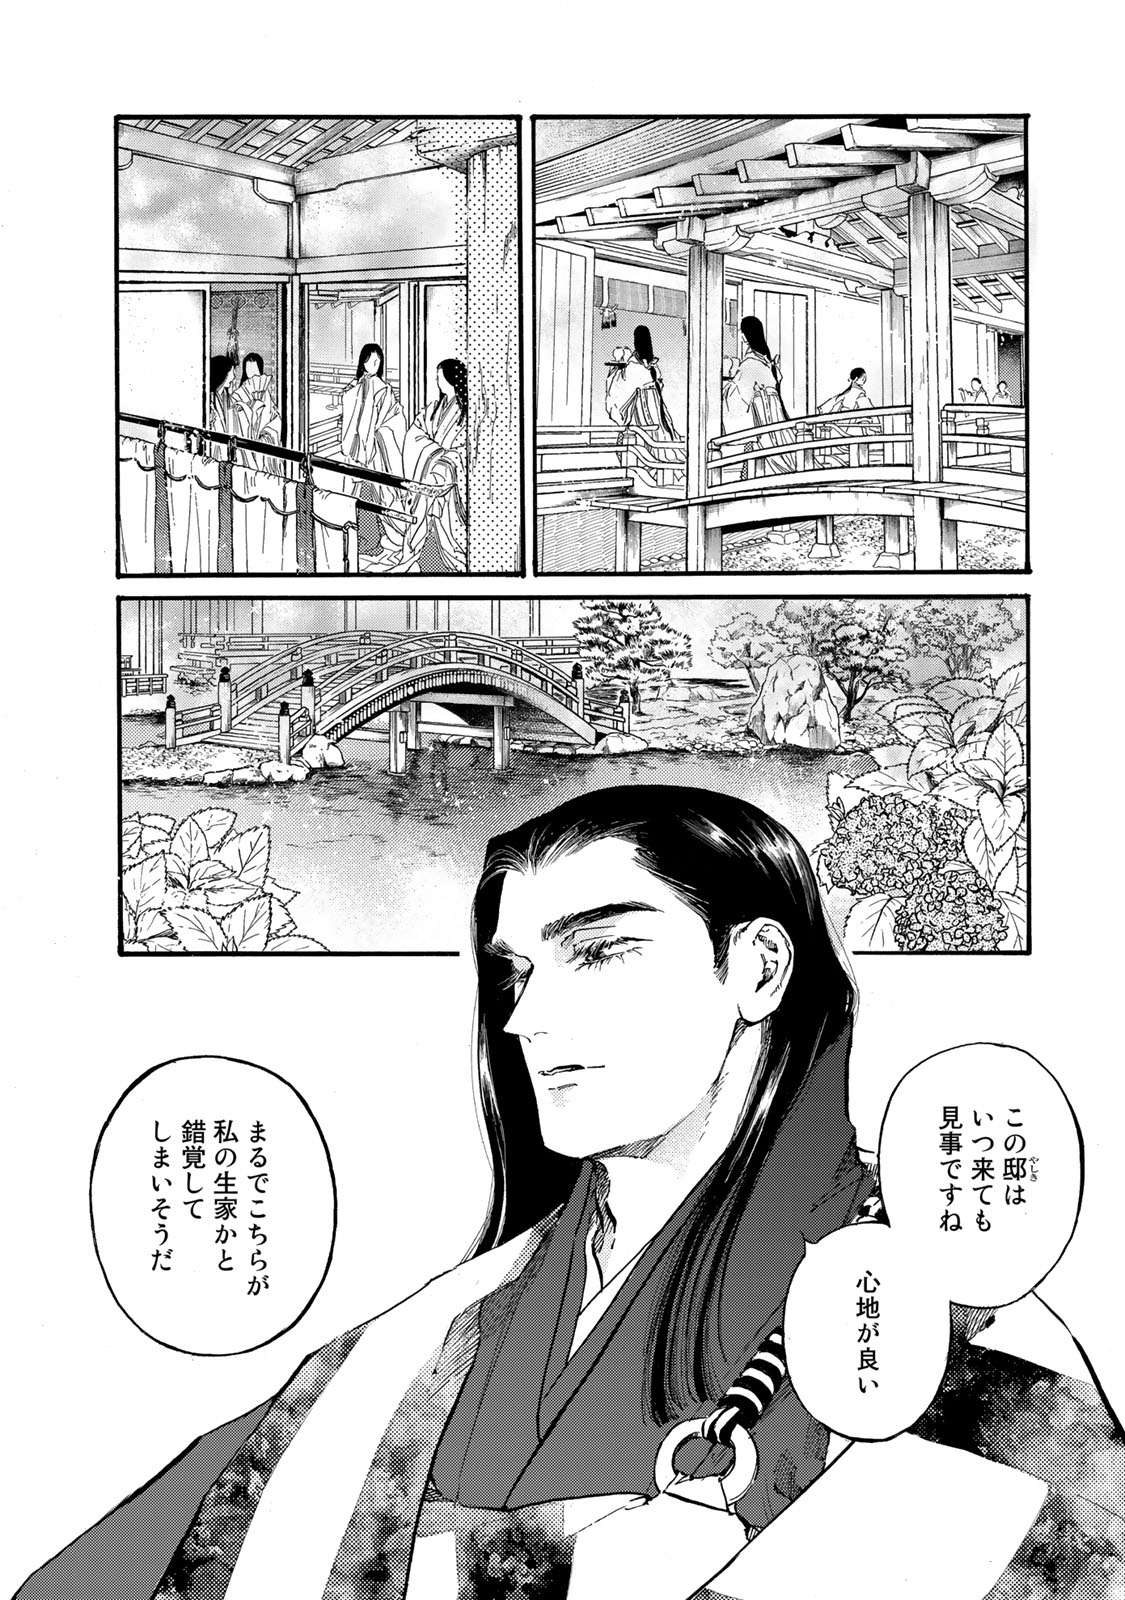 Karasu wa Aruji wo Erabanai - Chapter 38 - Page 2